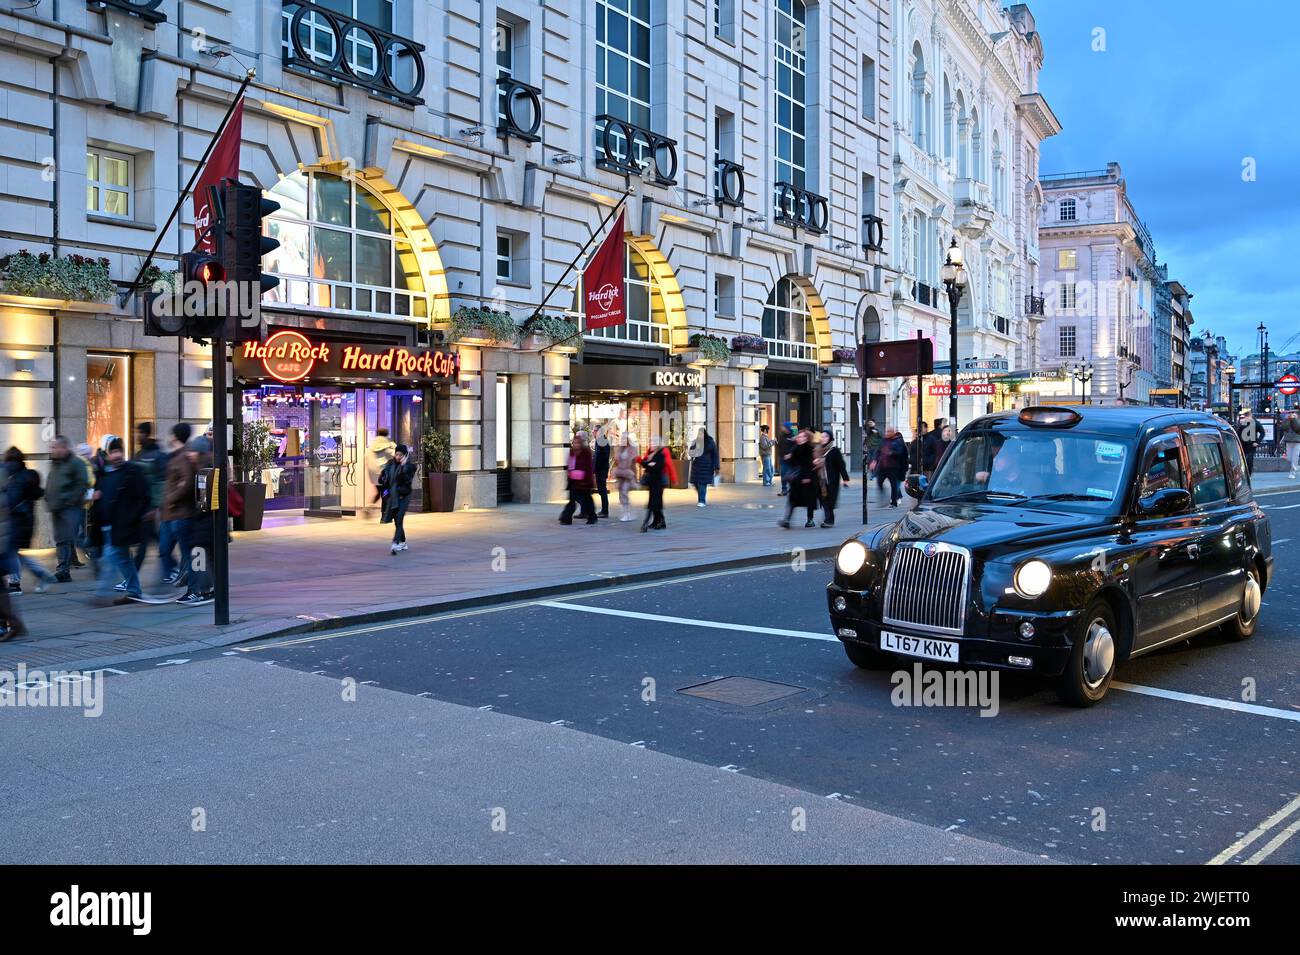 Piccadilly Circus : une plaque tournante du style de vie dynamique, de la culture et de la scène commerçante de Londres. Explorez le cœur du tourisme et de l'excitation du commerce de détail. Banque D'Images